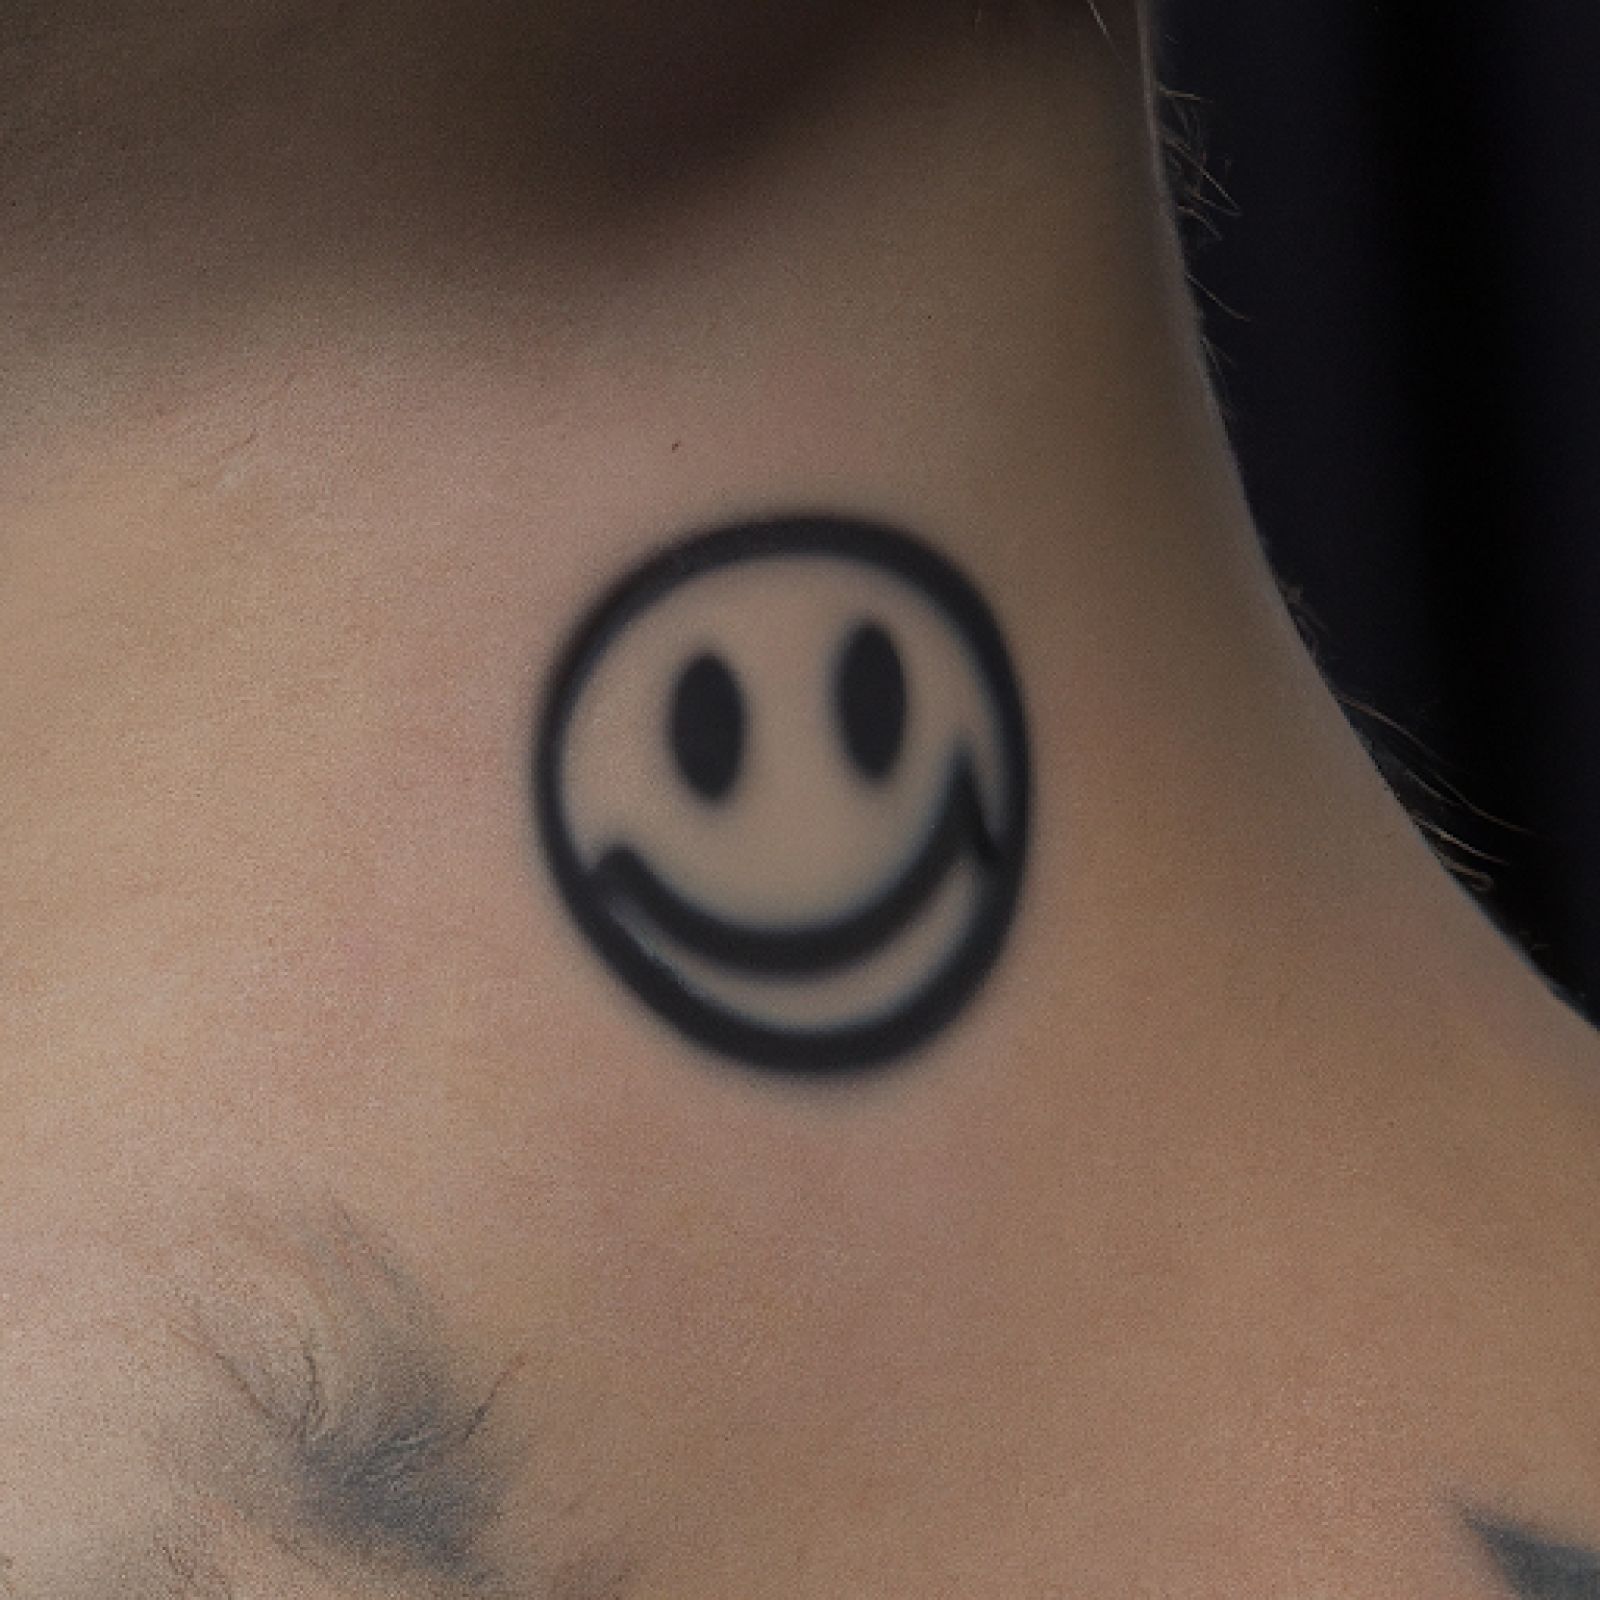 Smiley tattoo on shoulder for men